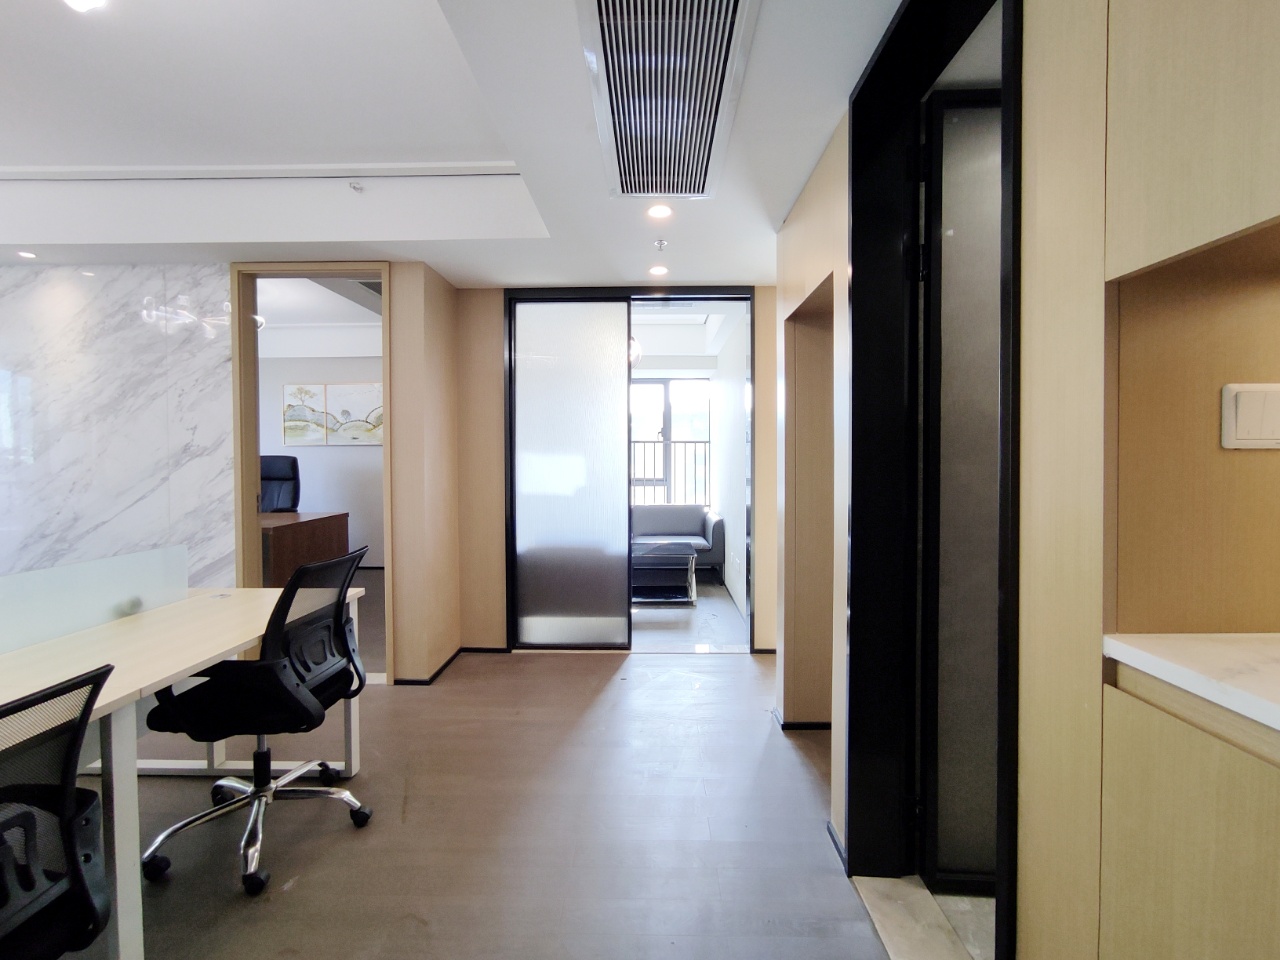 成华区龙湖梵城颂精装小面积办公室 82平精装带家具 4隔间 交通便利 生活方便